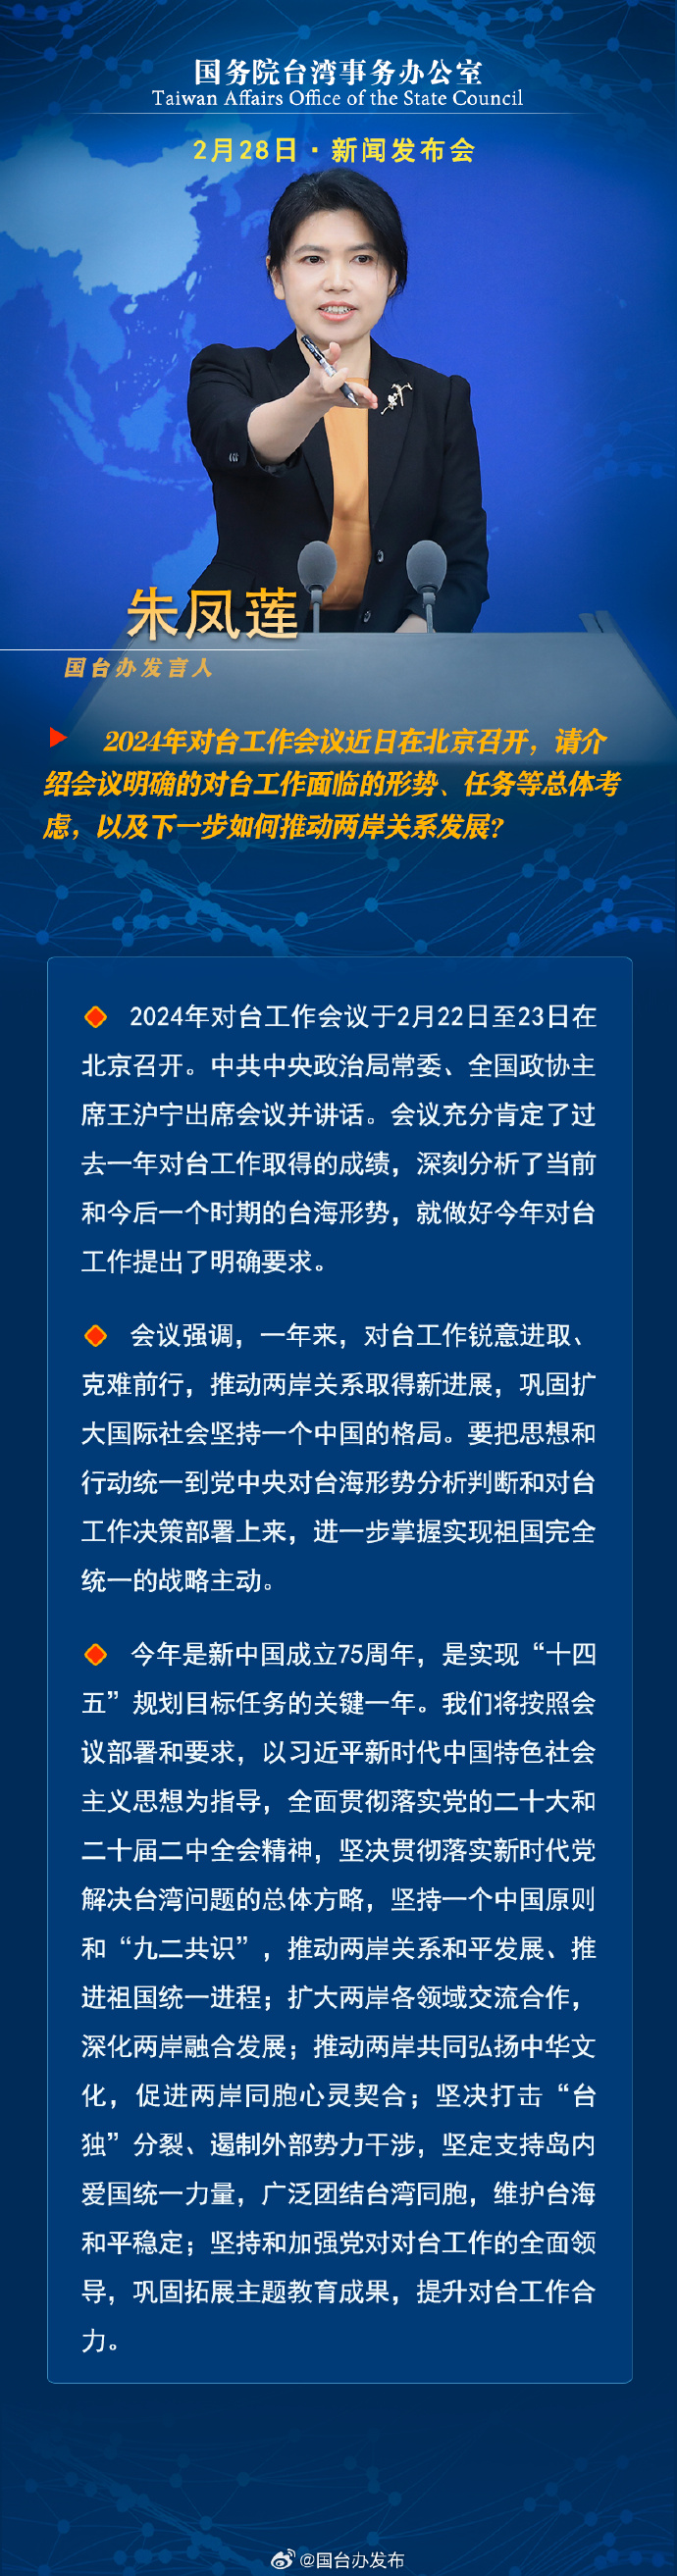 国务院台湾事务办公室2月28日·新闻发布会